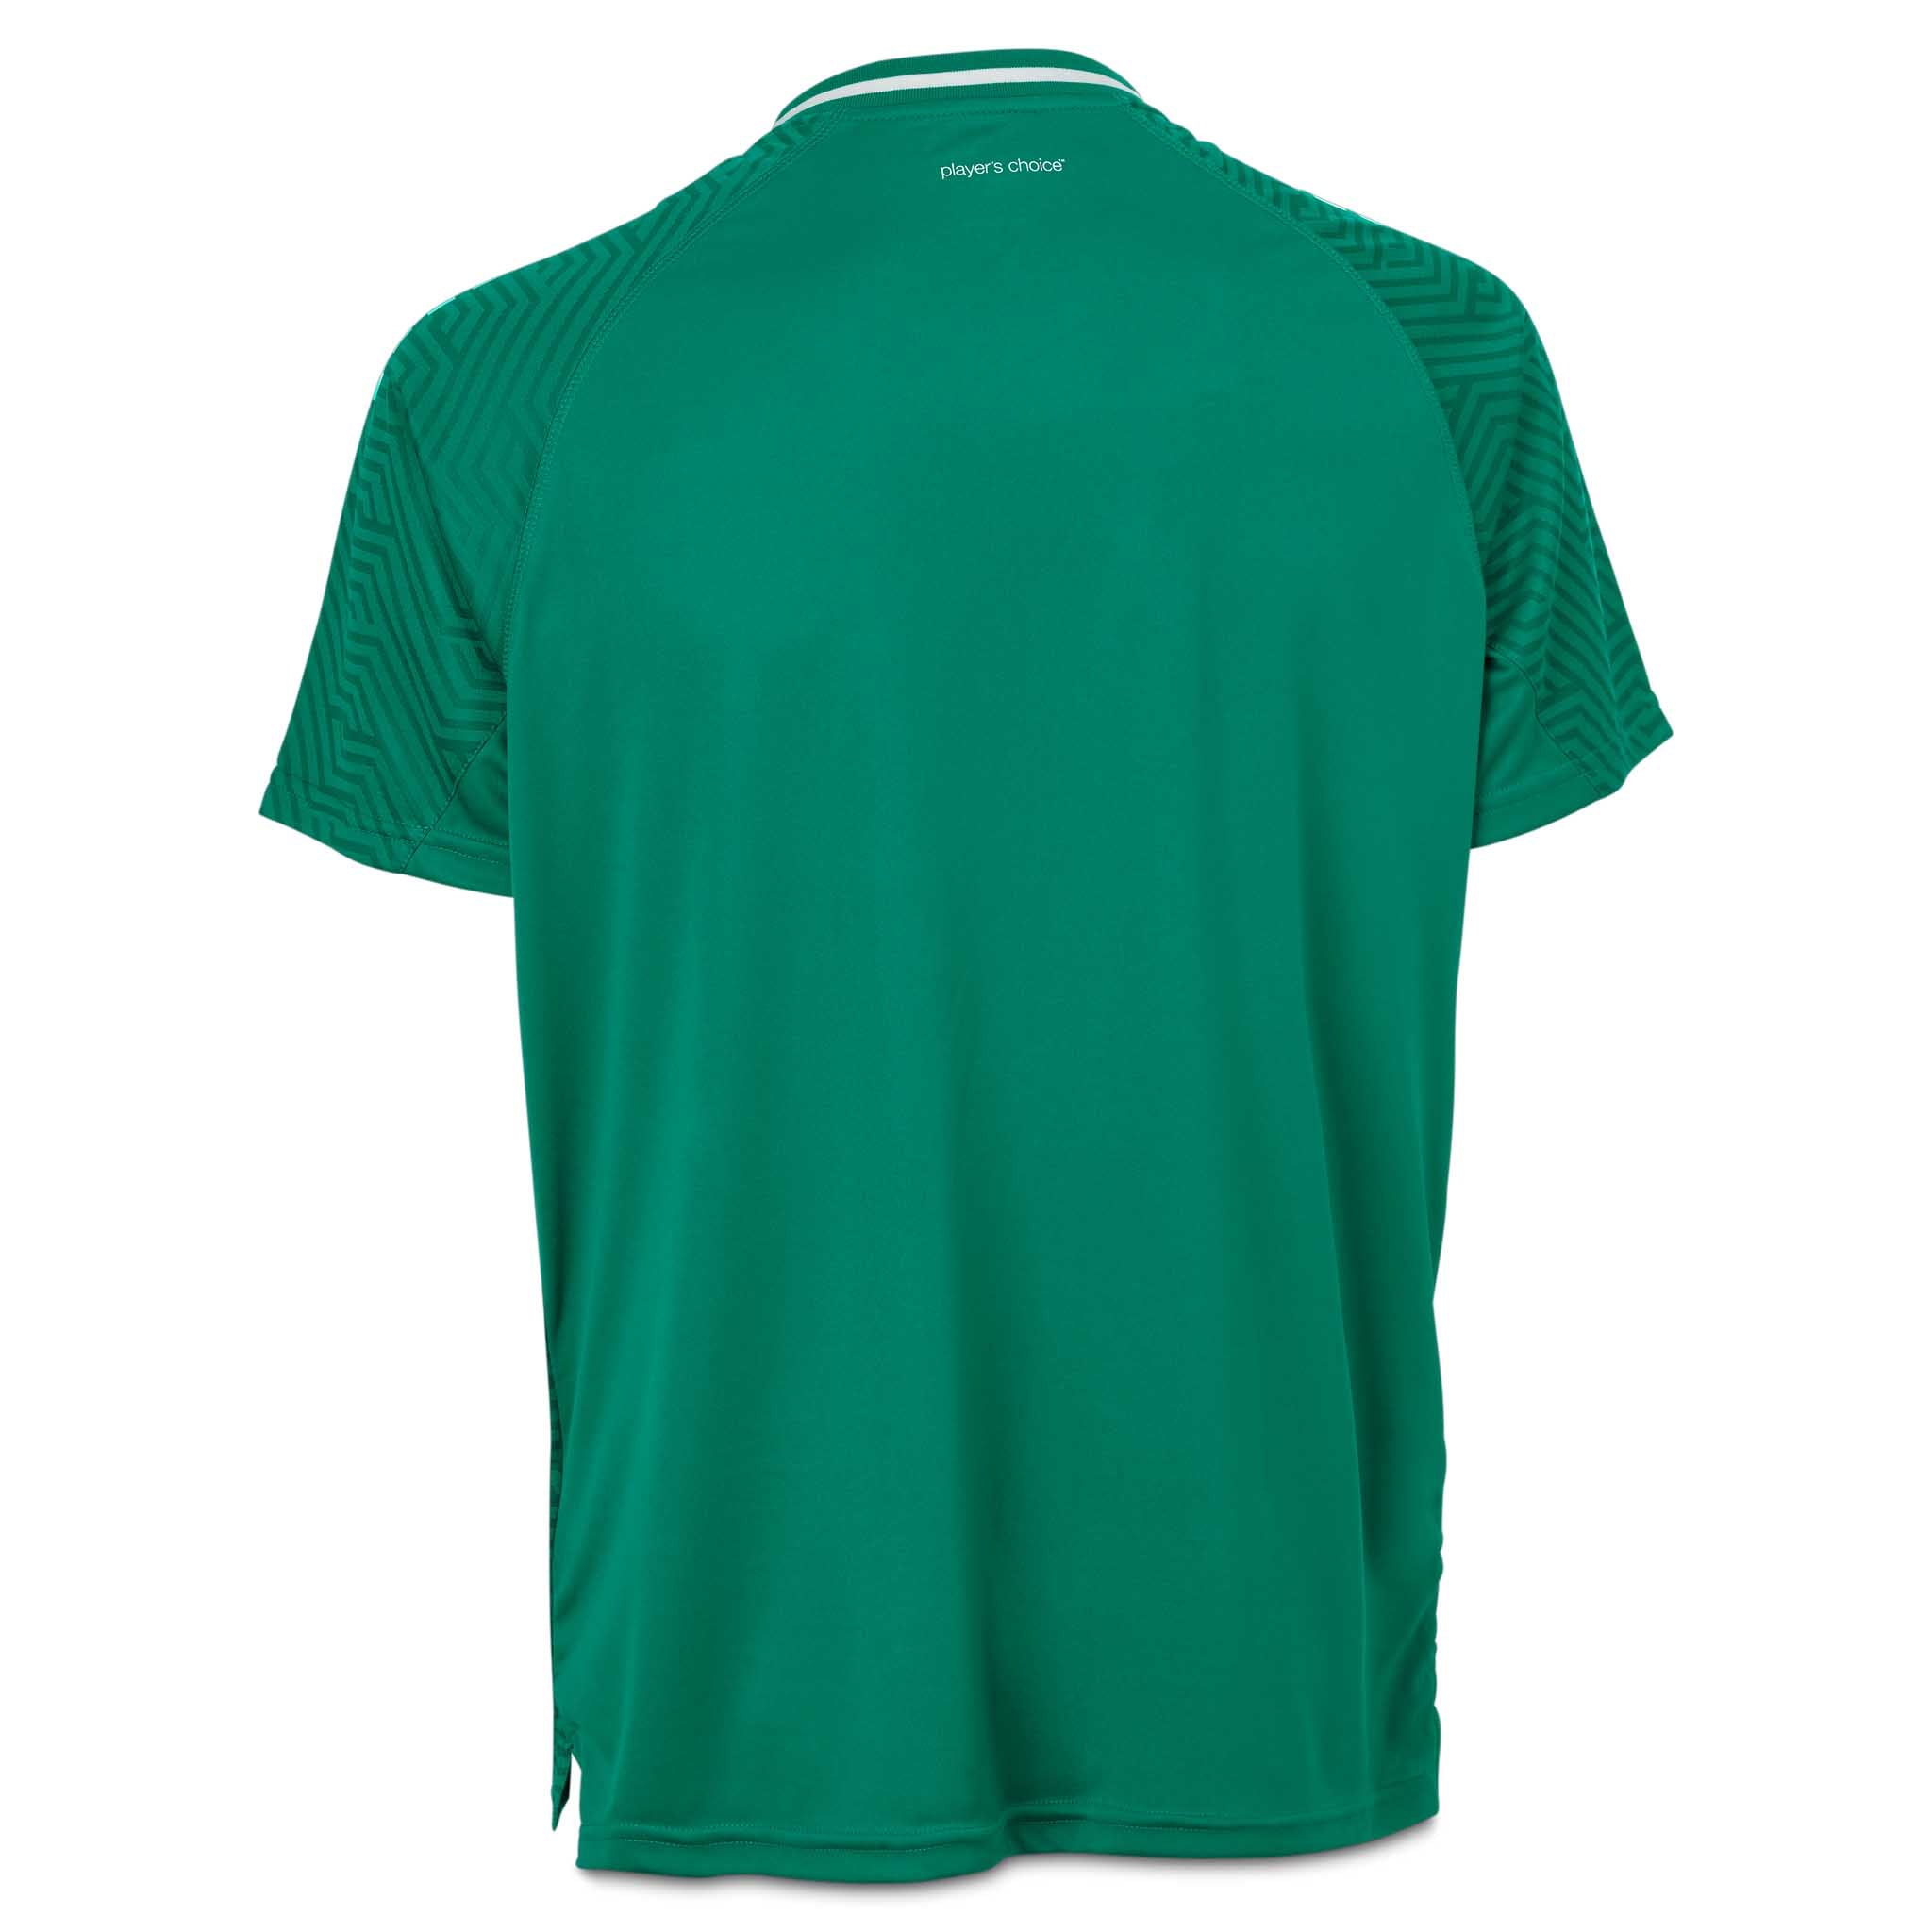 Monaco Player shirt S/S - Kids #colour_green/white